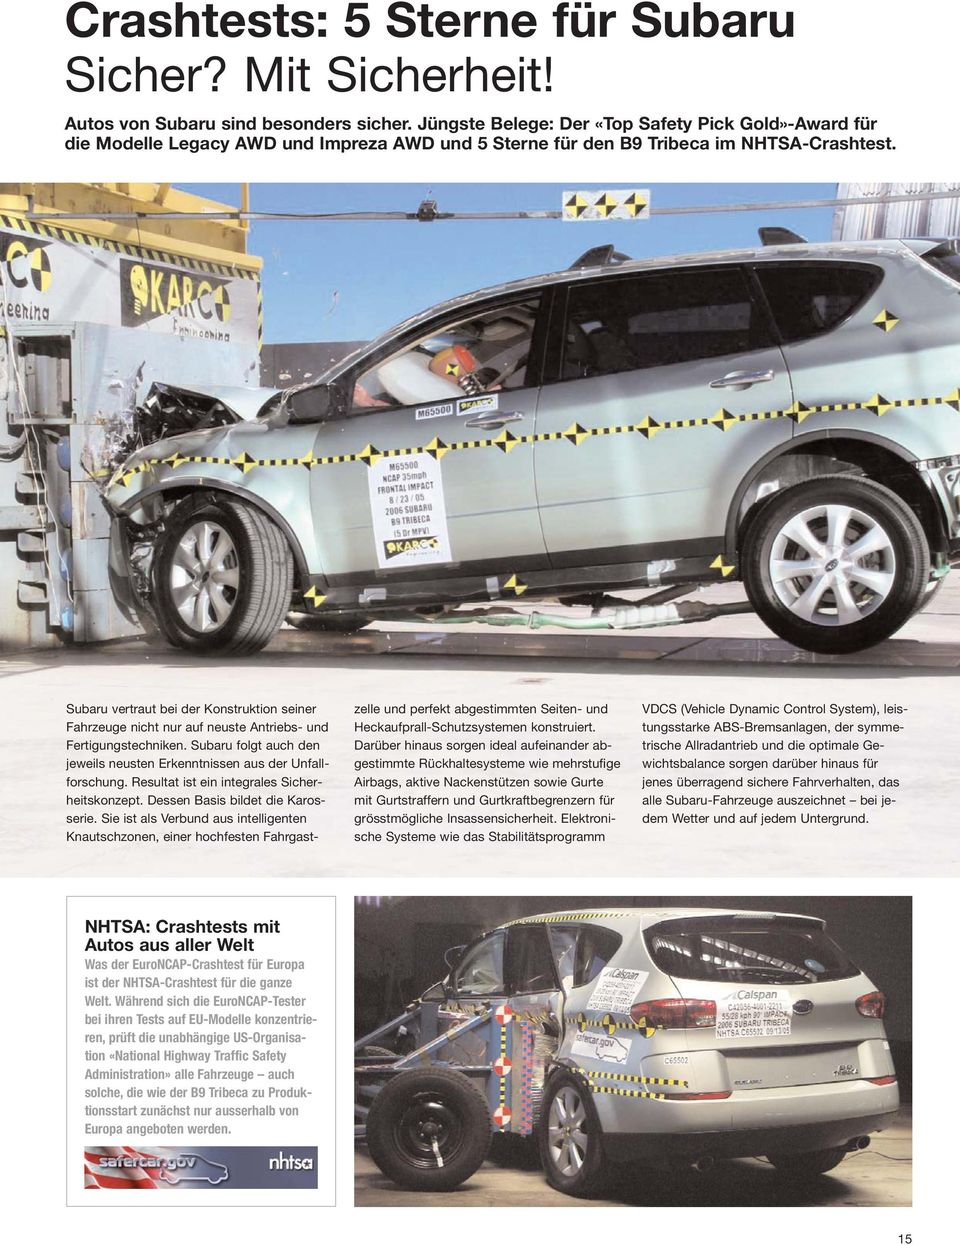 Subaru vertraut bei der Konstruktion seiner Fahrzeuge nicht nur auf neuste Antriebs- und Fertigungstechniken. Subaru folgt auch den jeweils neusten Erkenntnissen aus der Unfallforschung.